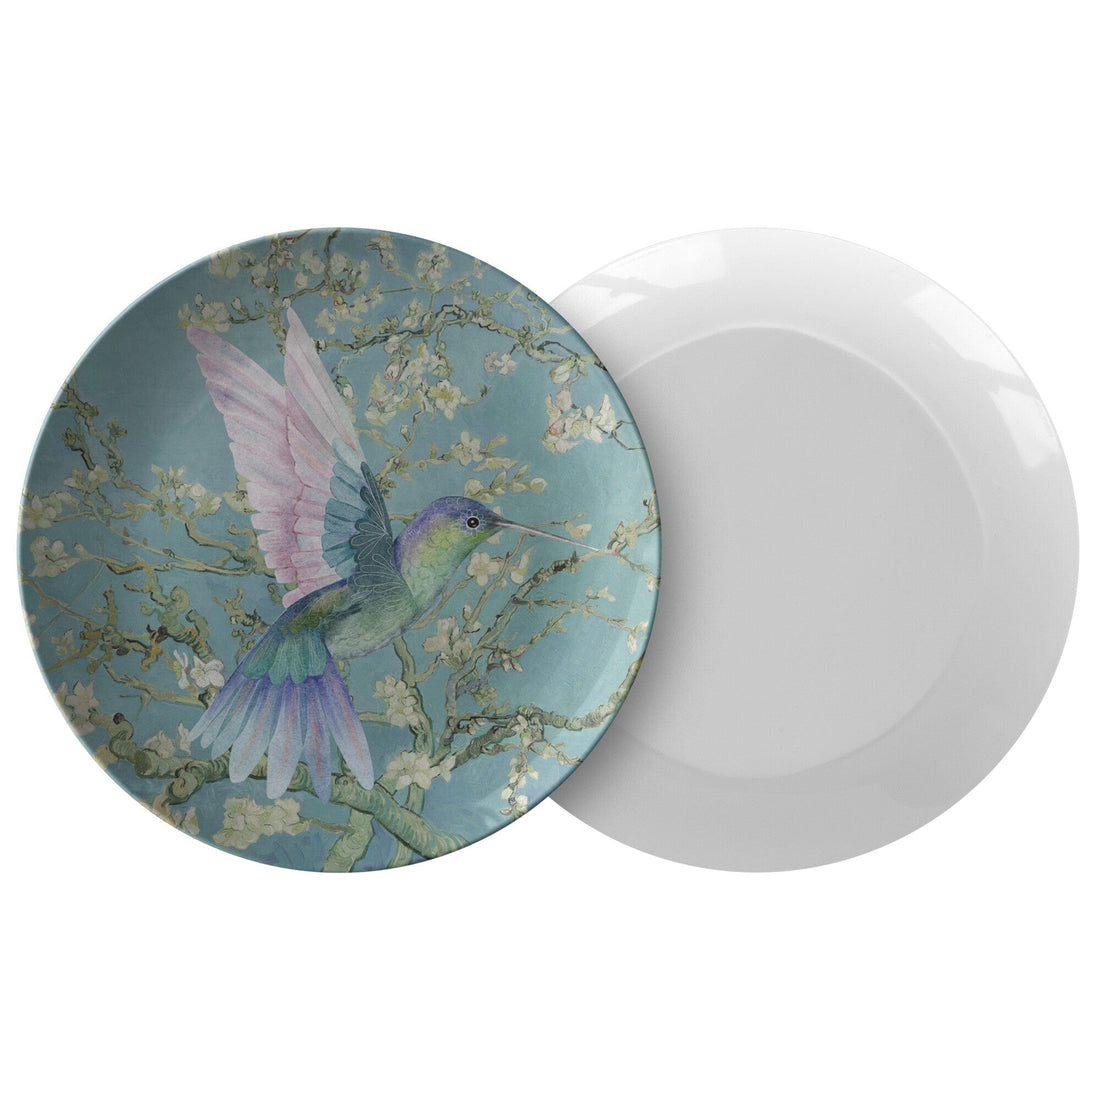 Kate McEnroe New York Hummingbird In Almond Blossoms Dinner PlatesPlatesP20 - HUM - GRE - 1S